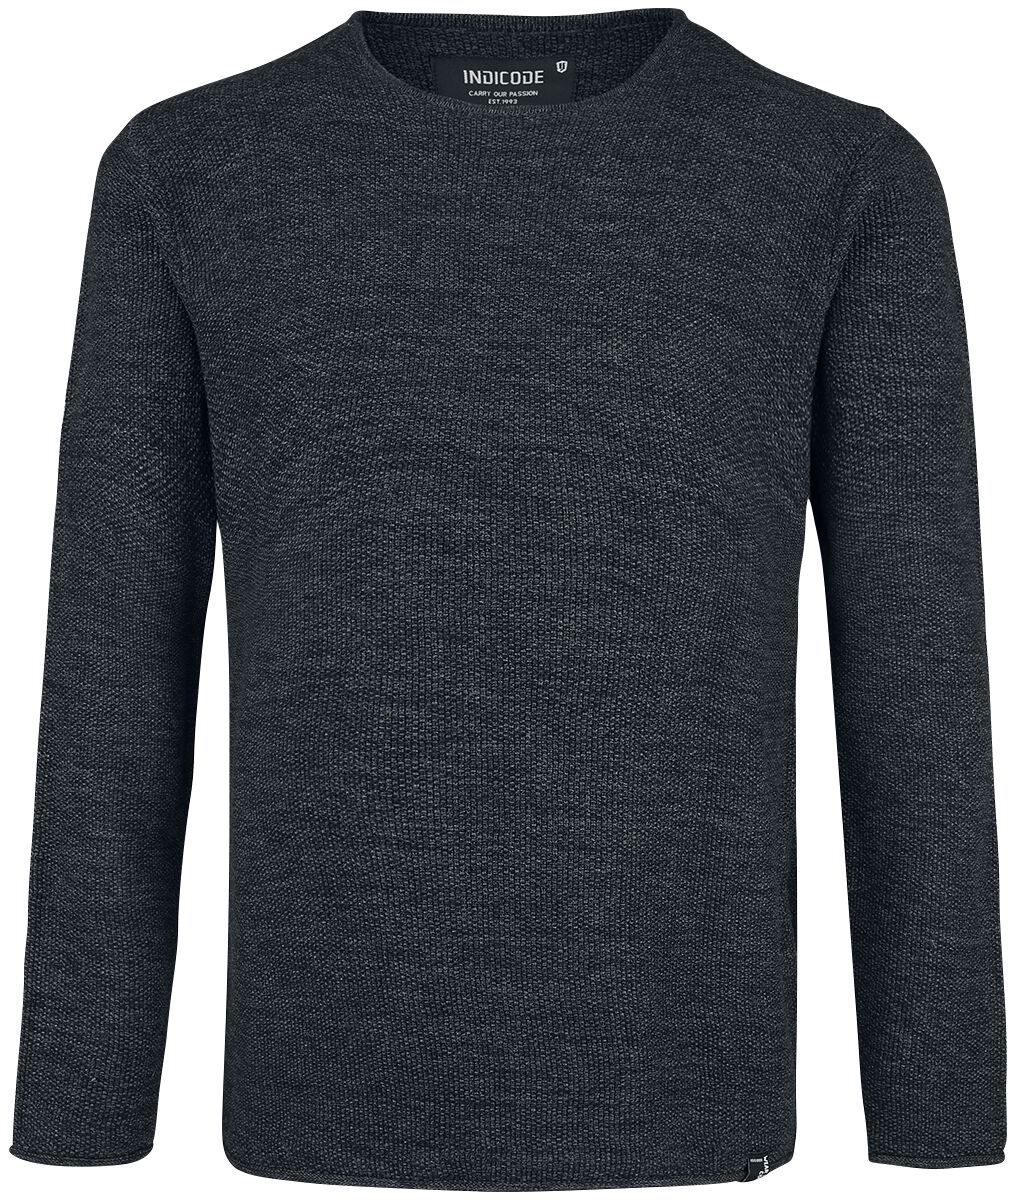 Indicode Sweatshirt - Kristian - S bis XXL - für Männer - Größe S - schwarz